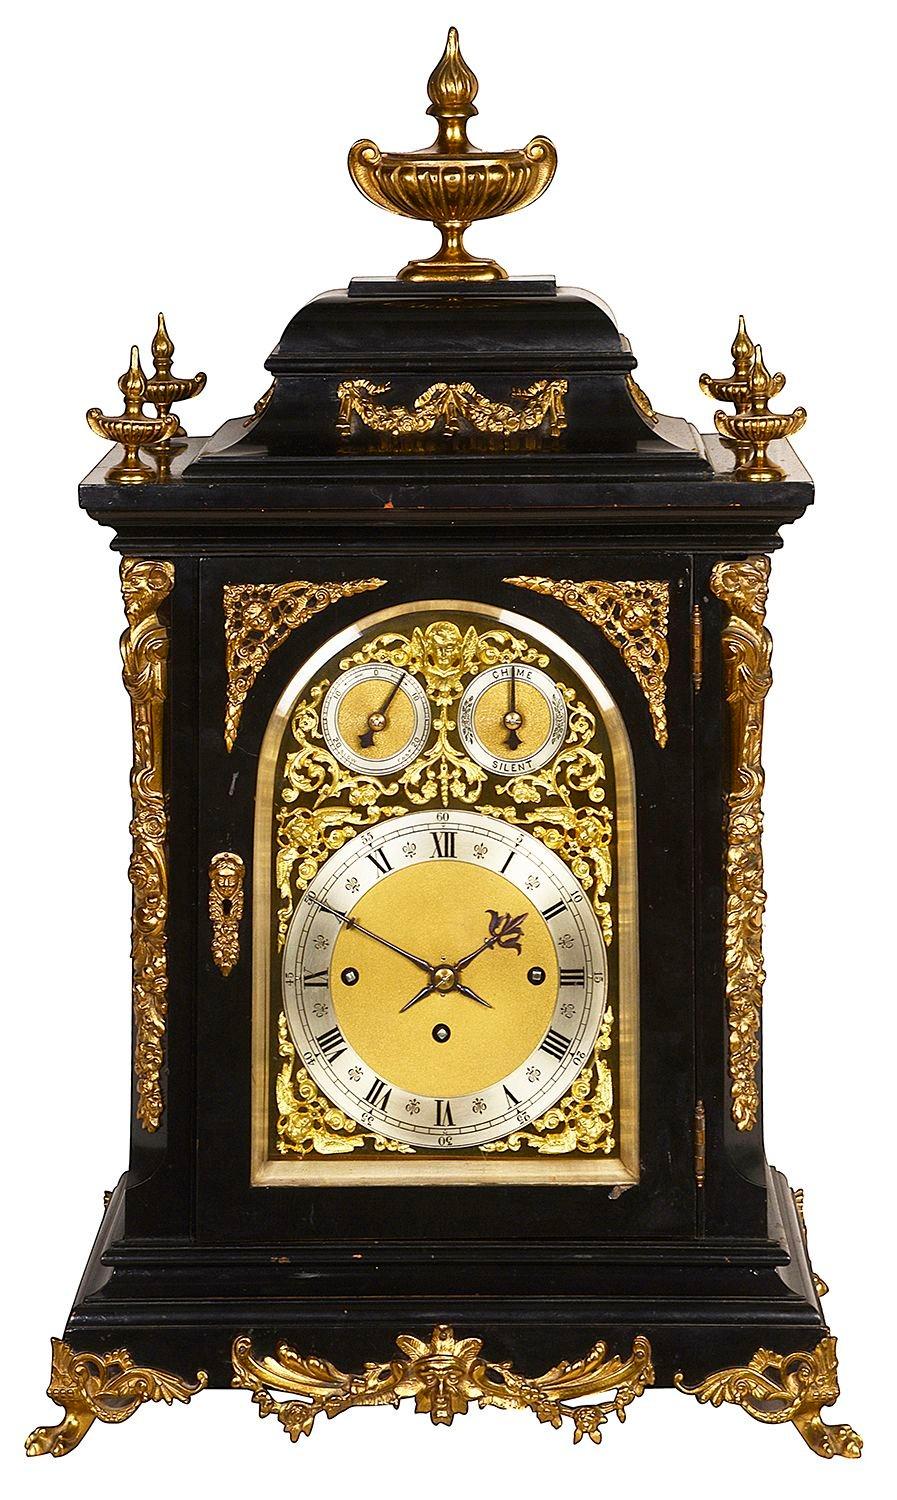 Ein imposantes 19. Jahrhundert ebonisiert, Westminster Chiming Mantel / Konsole Uhr, mit klassischen vergoldeten Ormolu Urne Kreuzblumen und scrolling blattförmigen Halterungen. Ein gewölbtes Messingzifferblatt mit einem dreizügigen Acht-Tage-Werk,